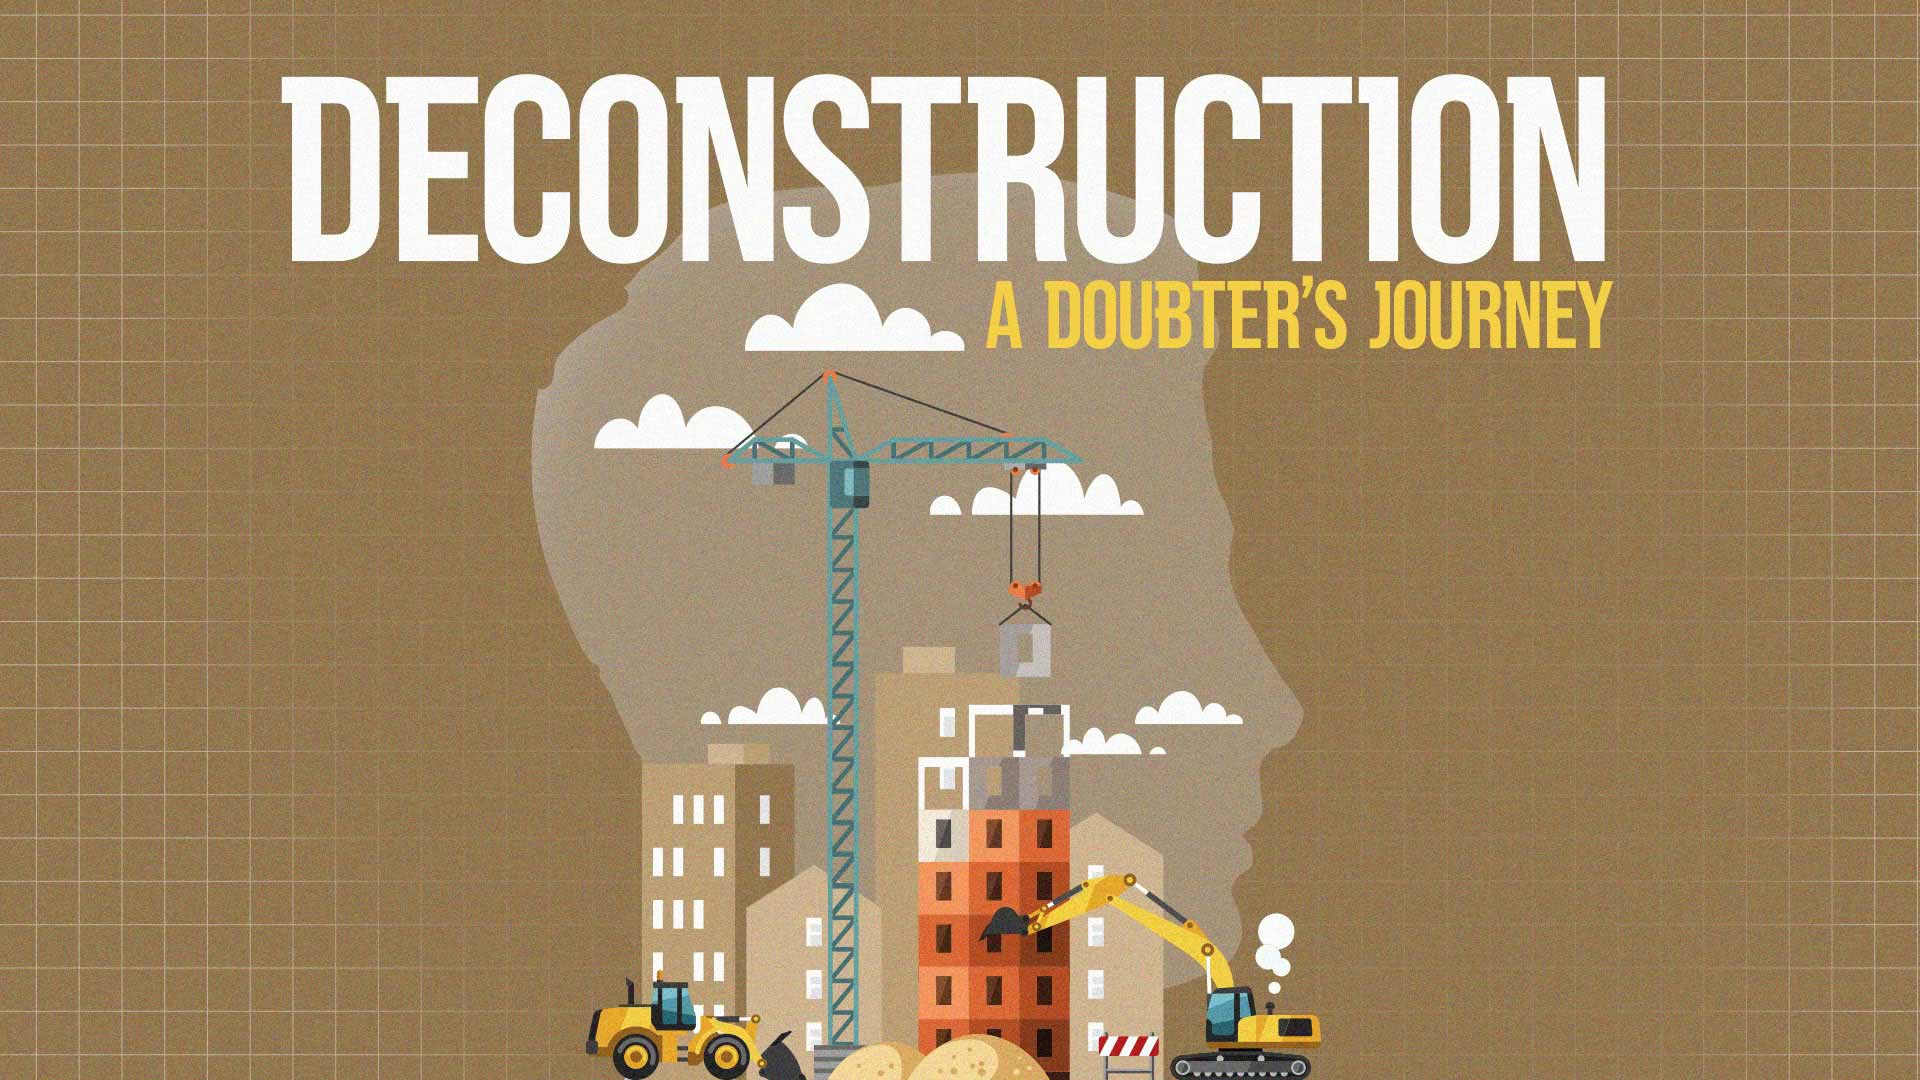 Deconstruction - A Doubter's Journey